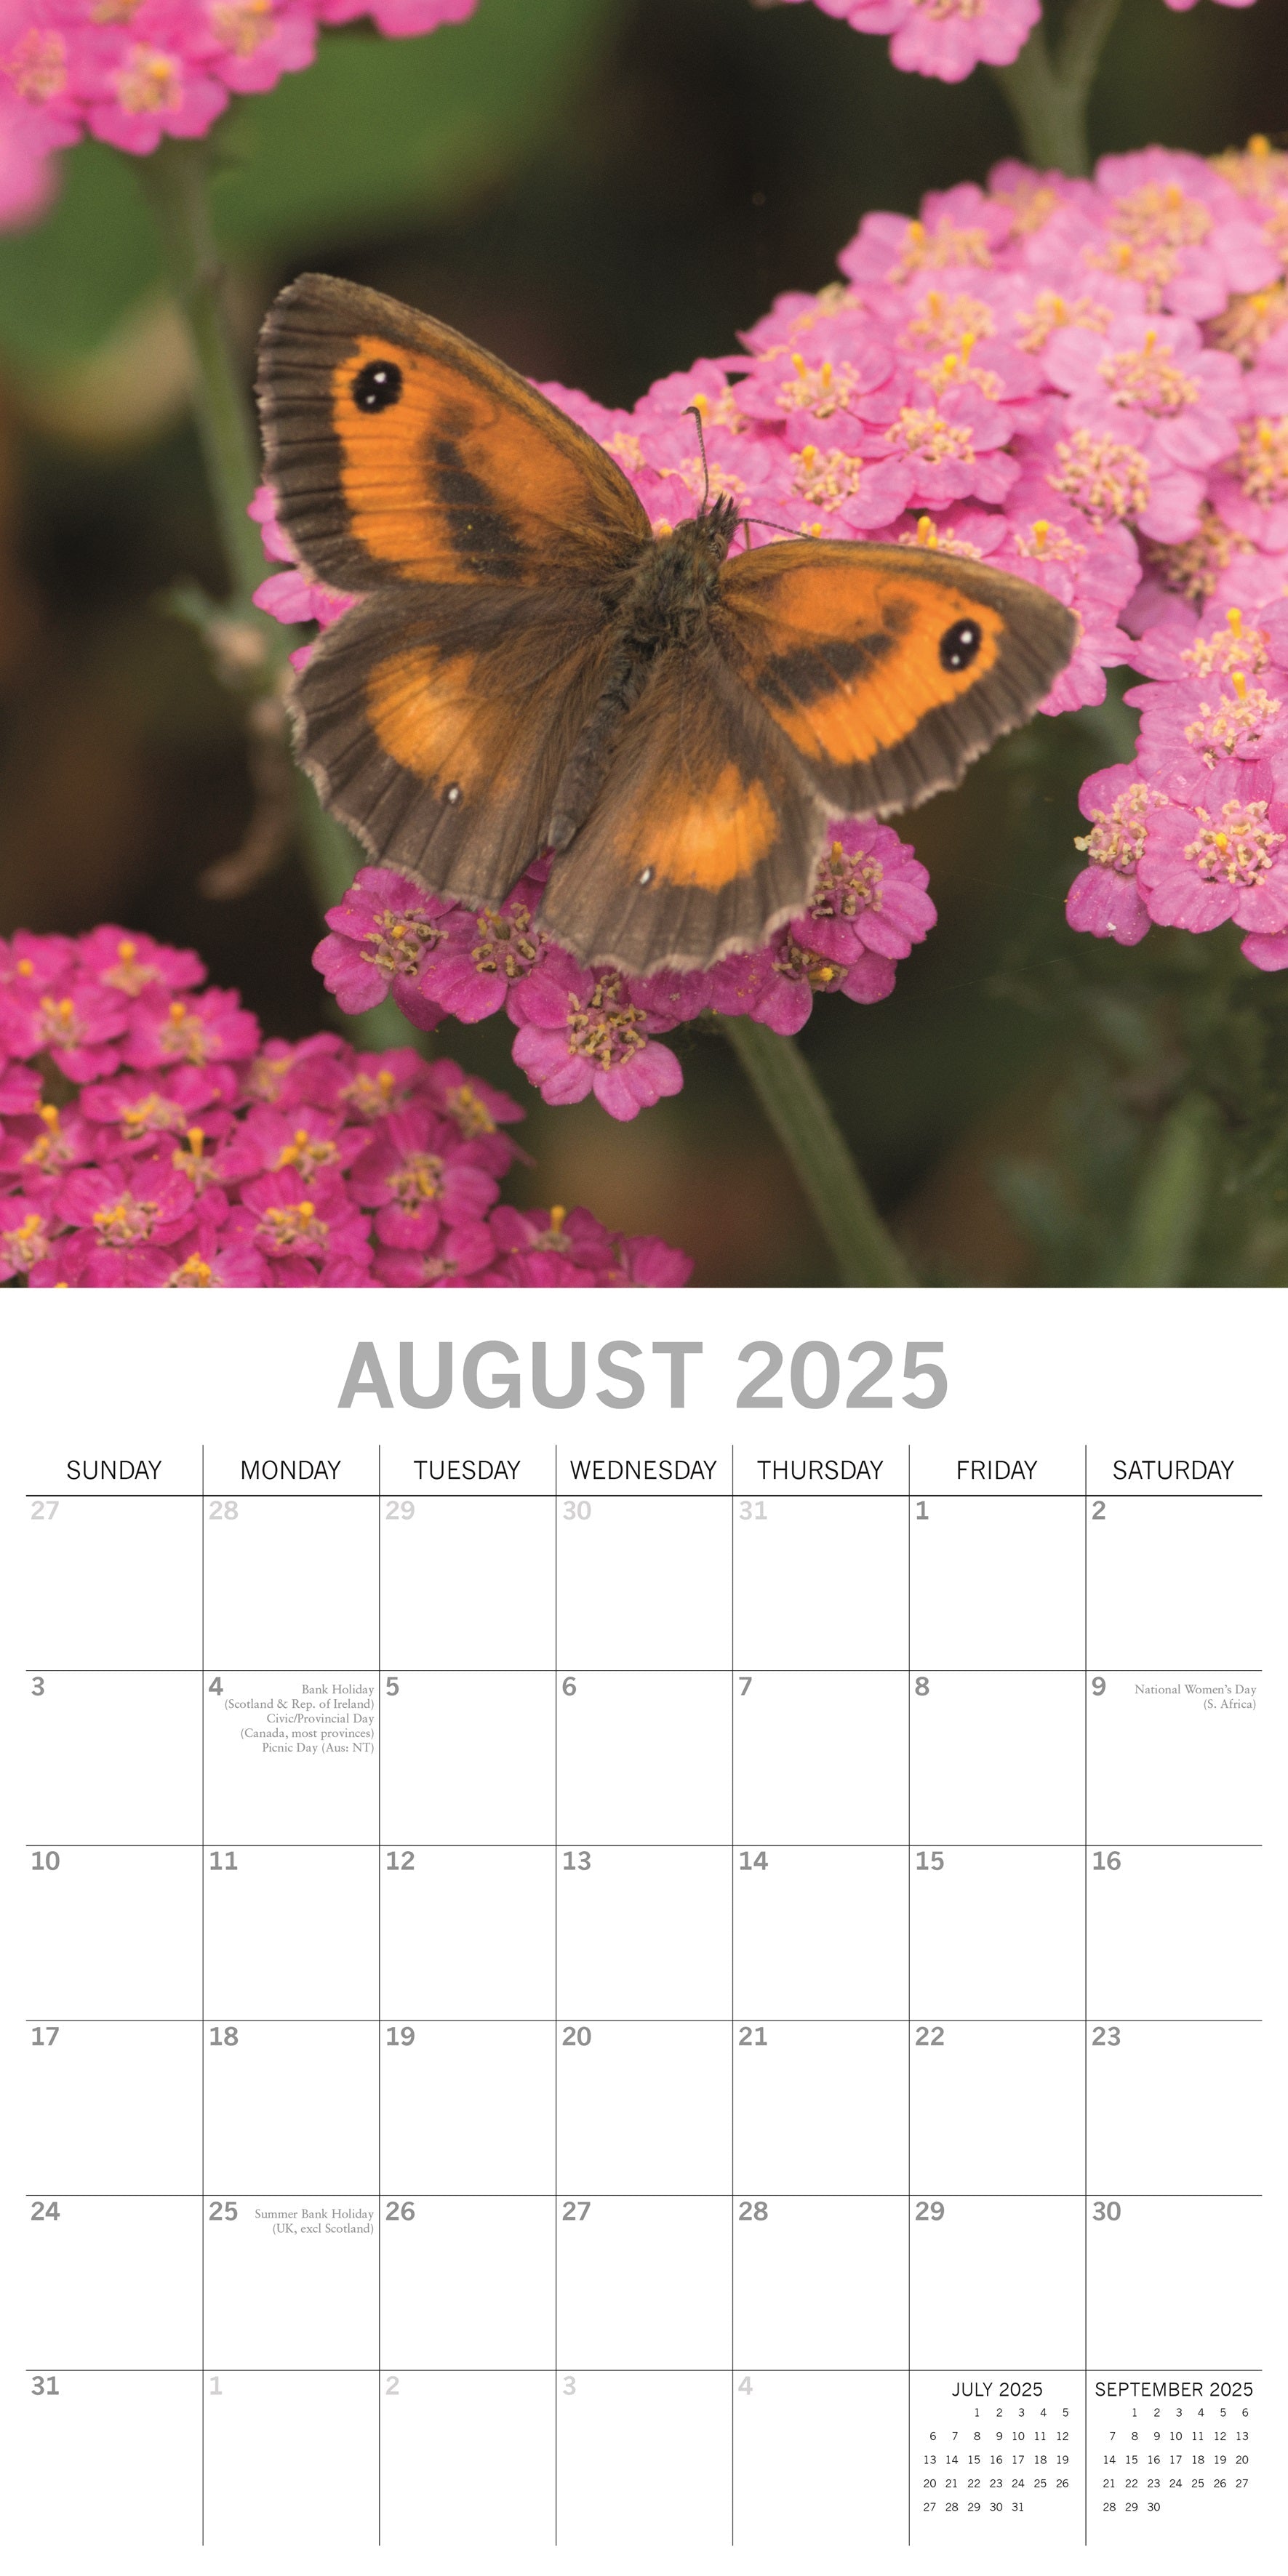 2025 Butterflies - Square Wall Calendar